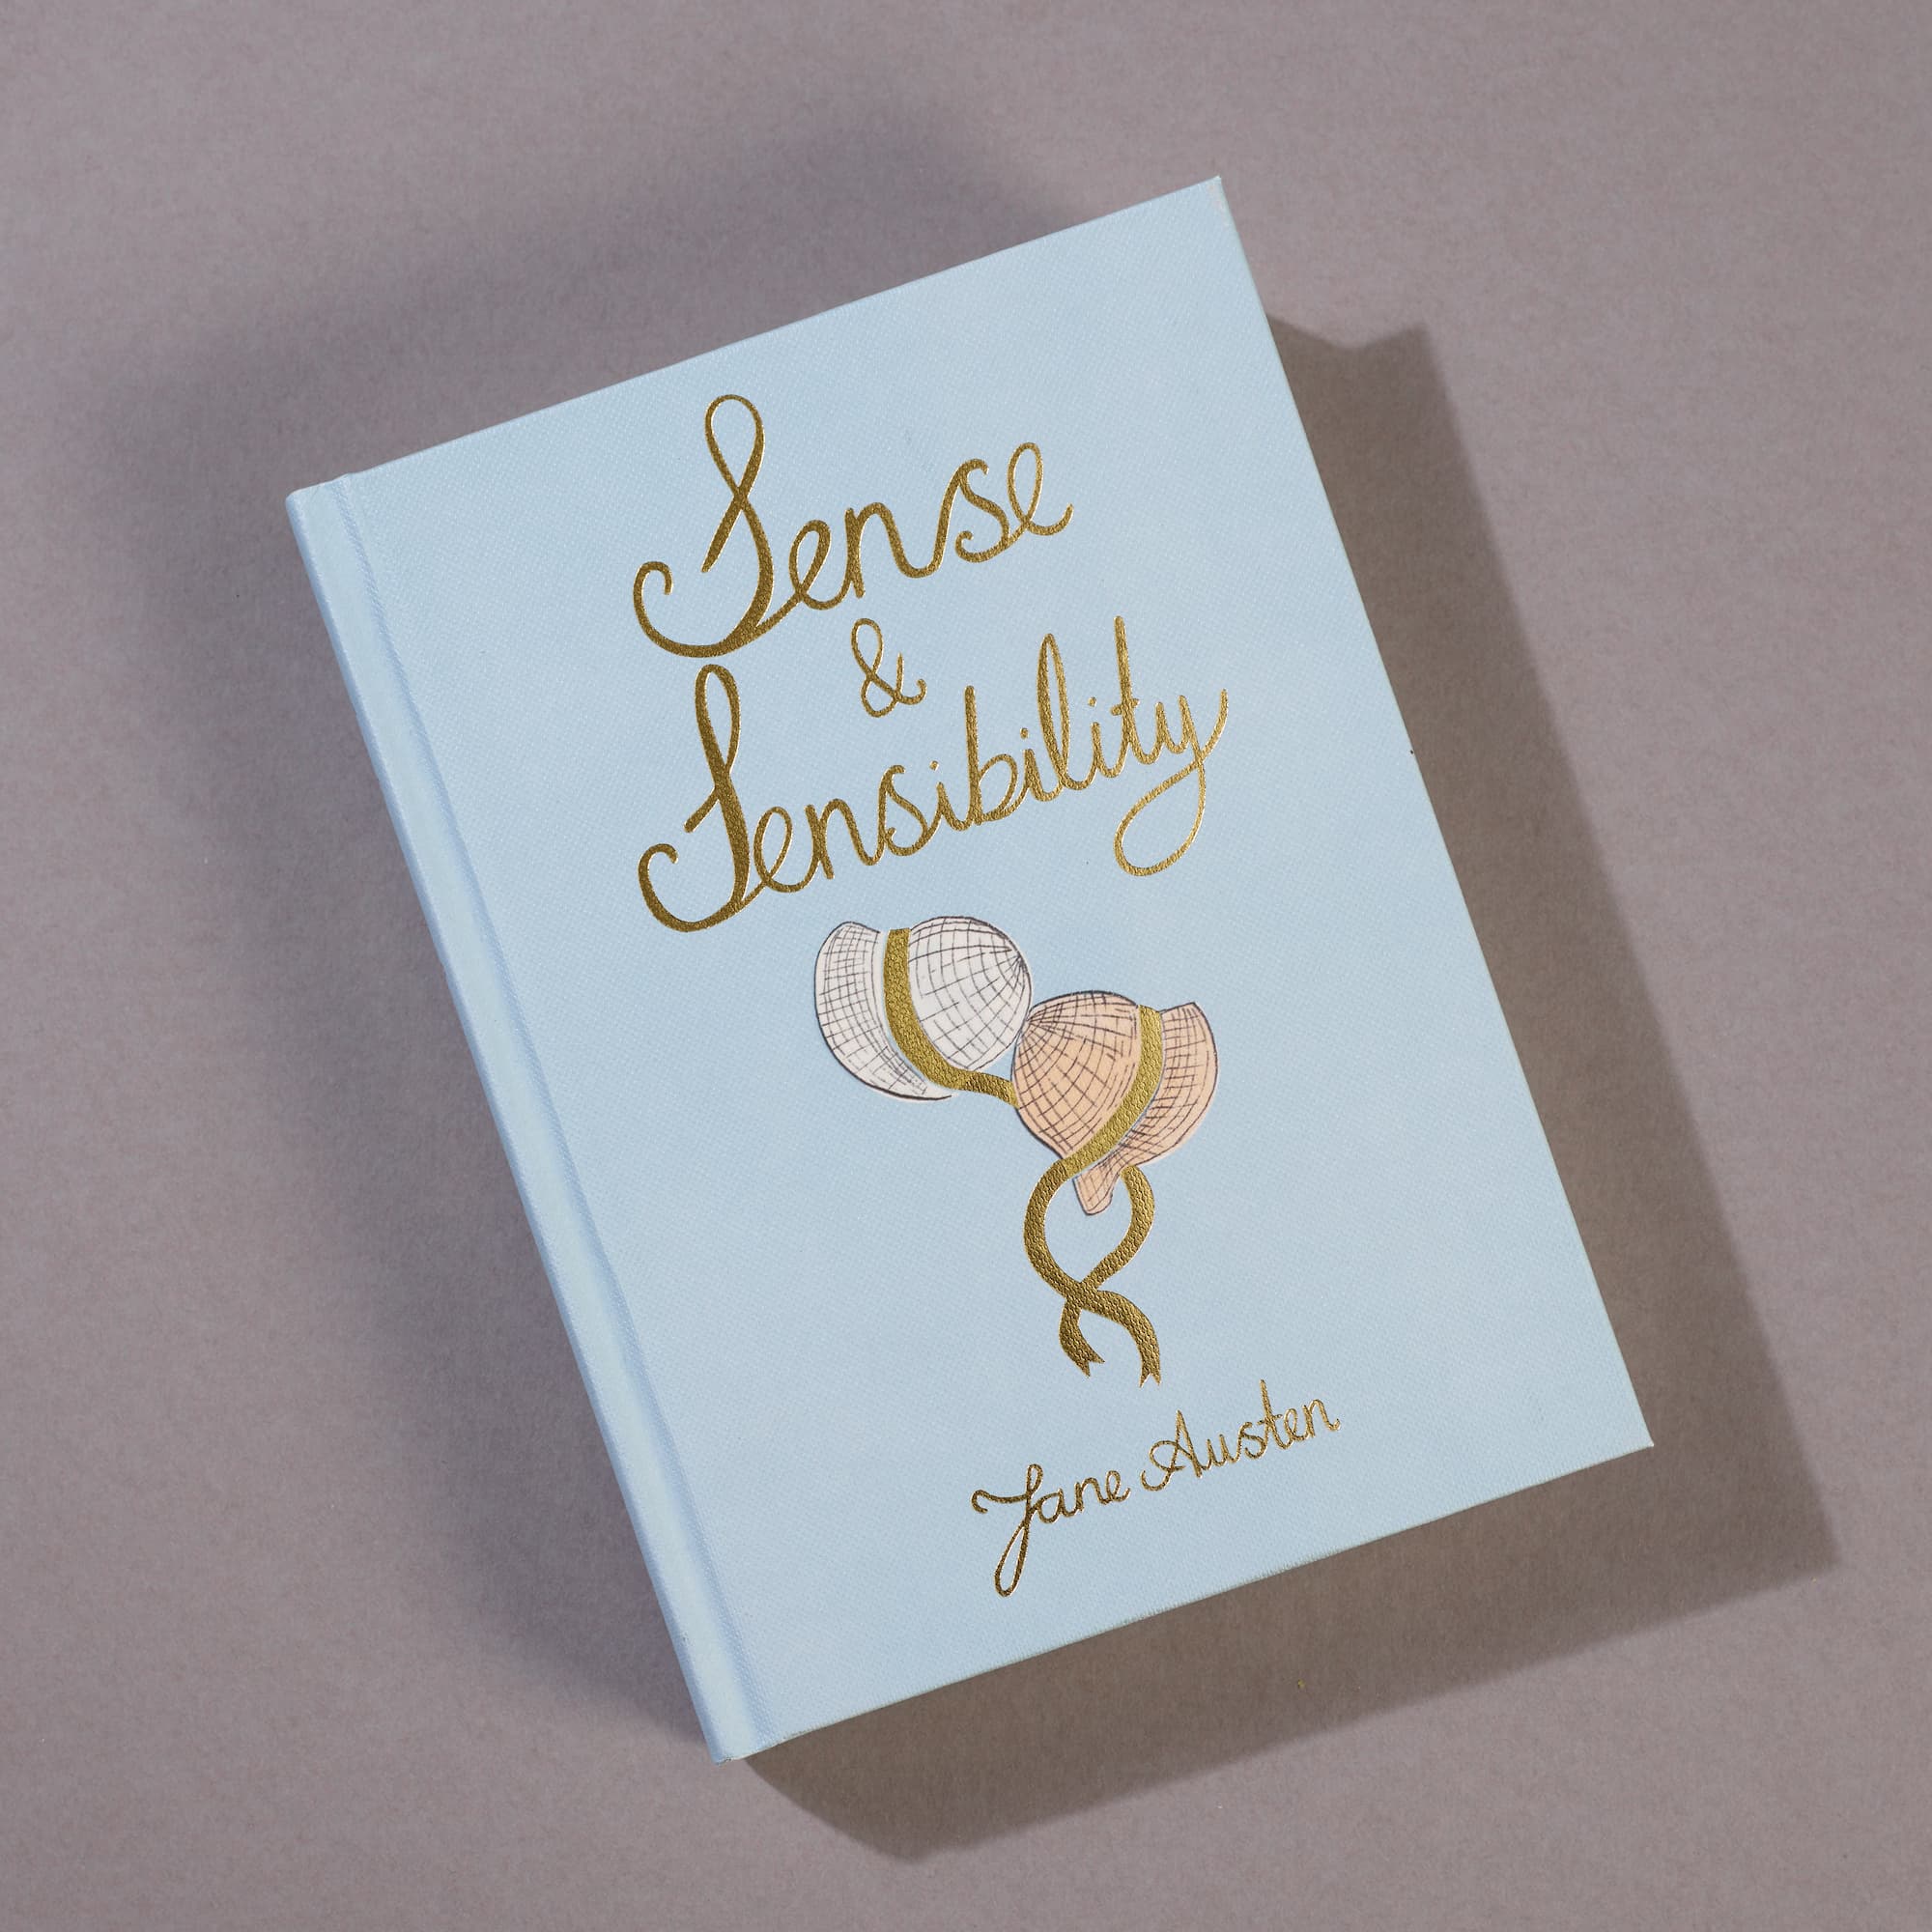 Sense and Sensibility Collectors Editions